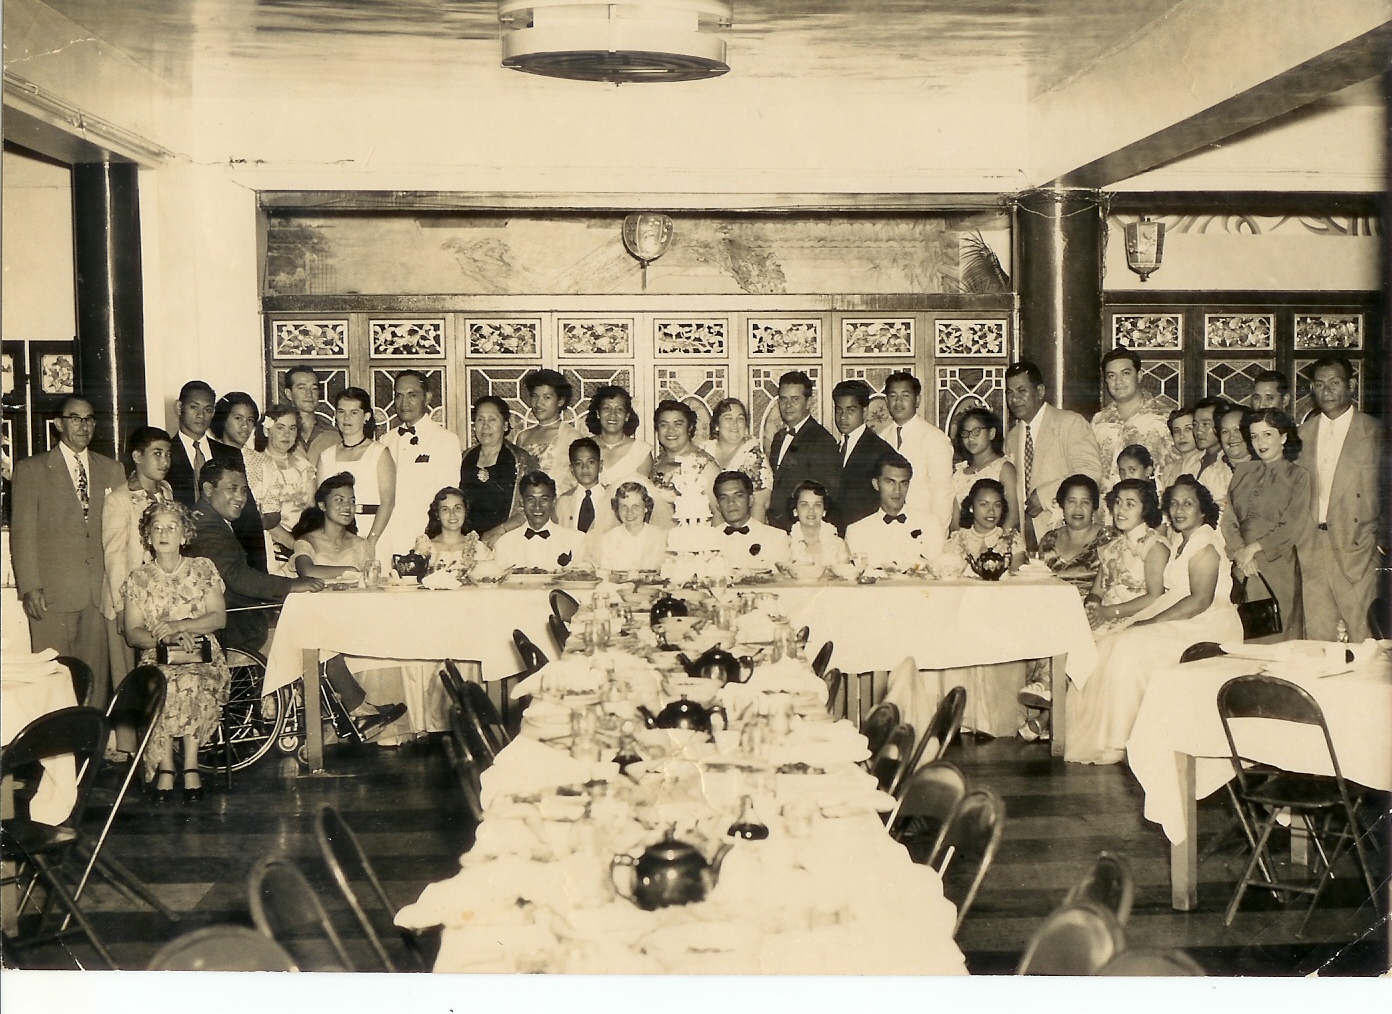 Leroy Su'a's wedding reception in Honolulu... circa 1950's